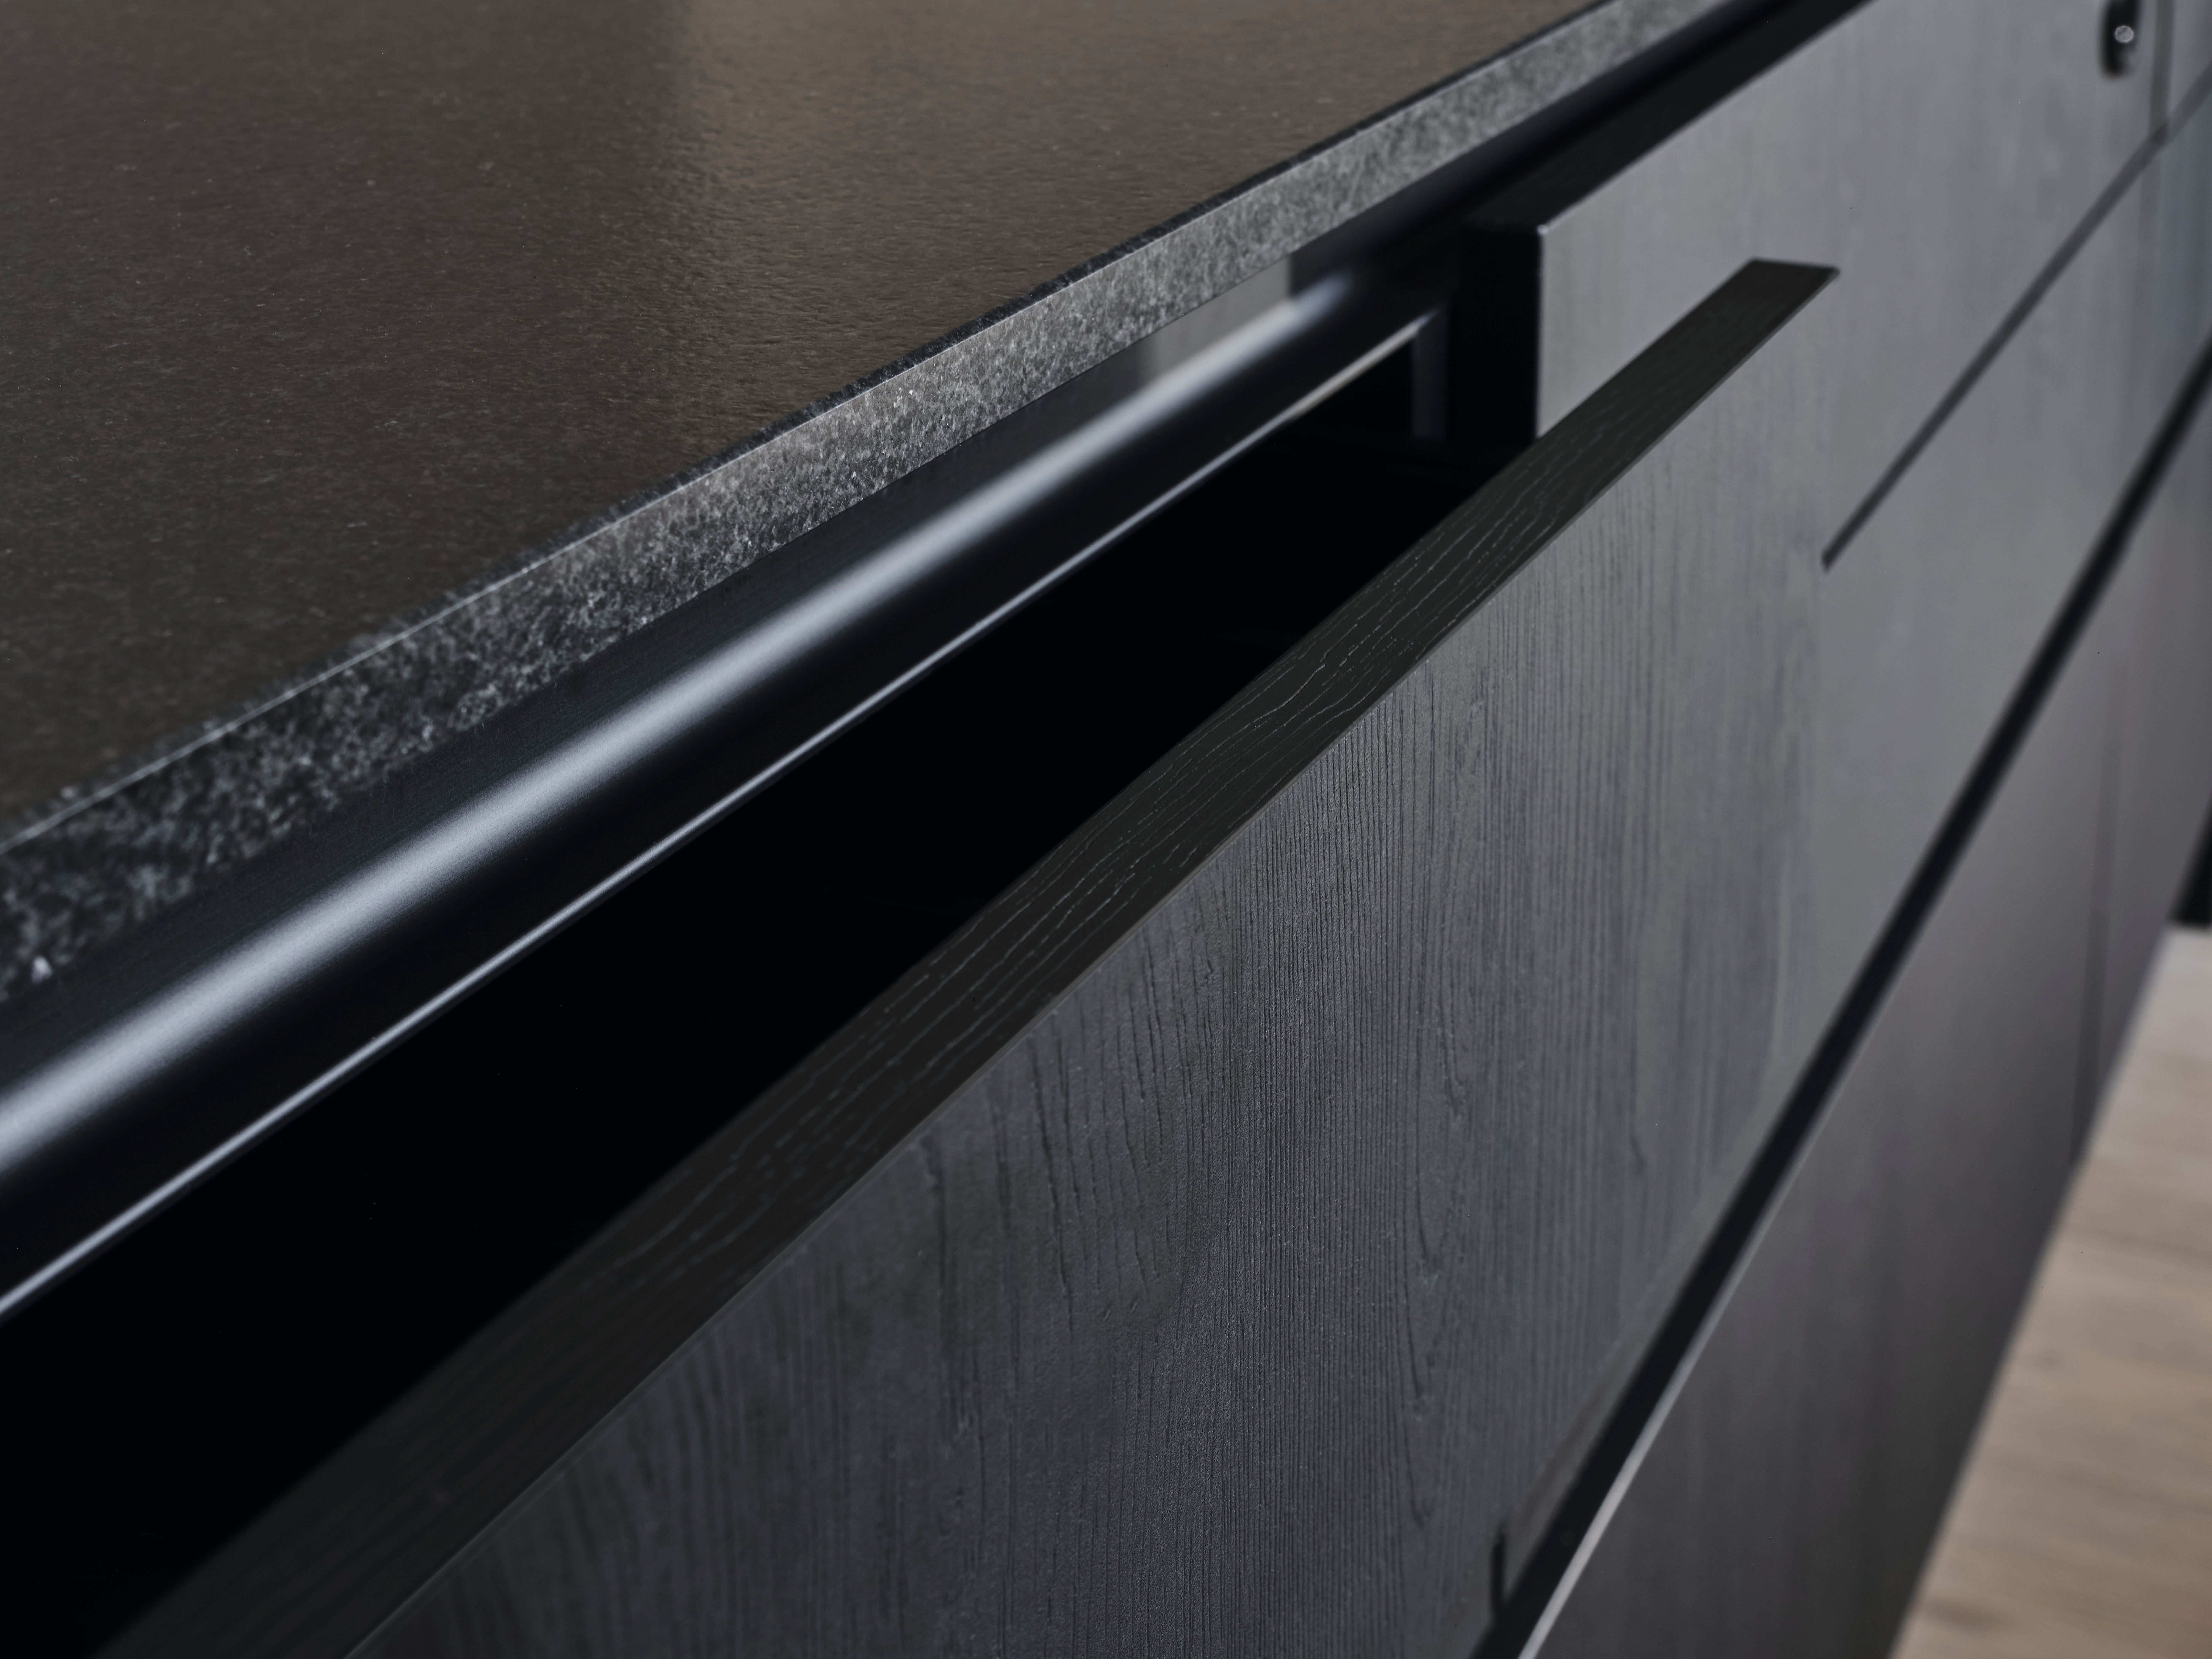 Speciální reflexní povaha PerfectSense Feelwood U999 TM28 Black dodává této kuchyni přirozeně vypadající eleganci. 